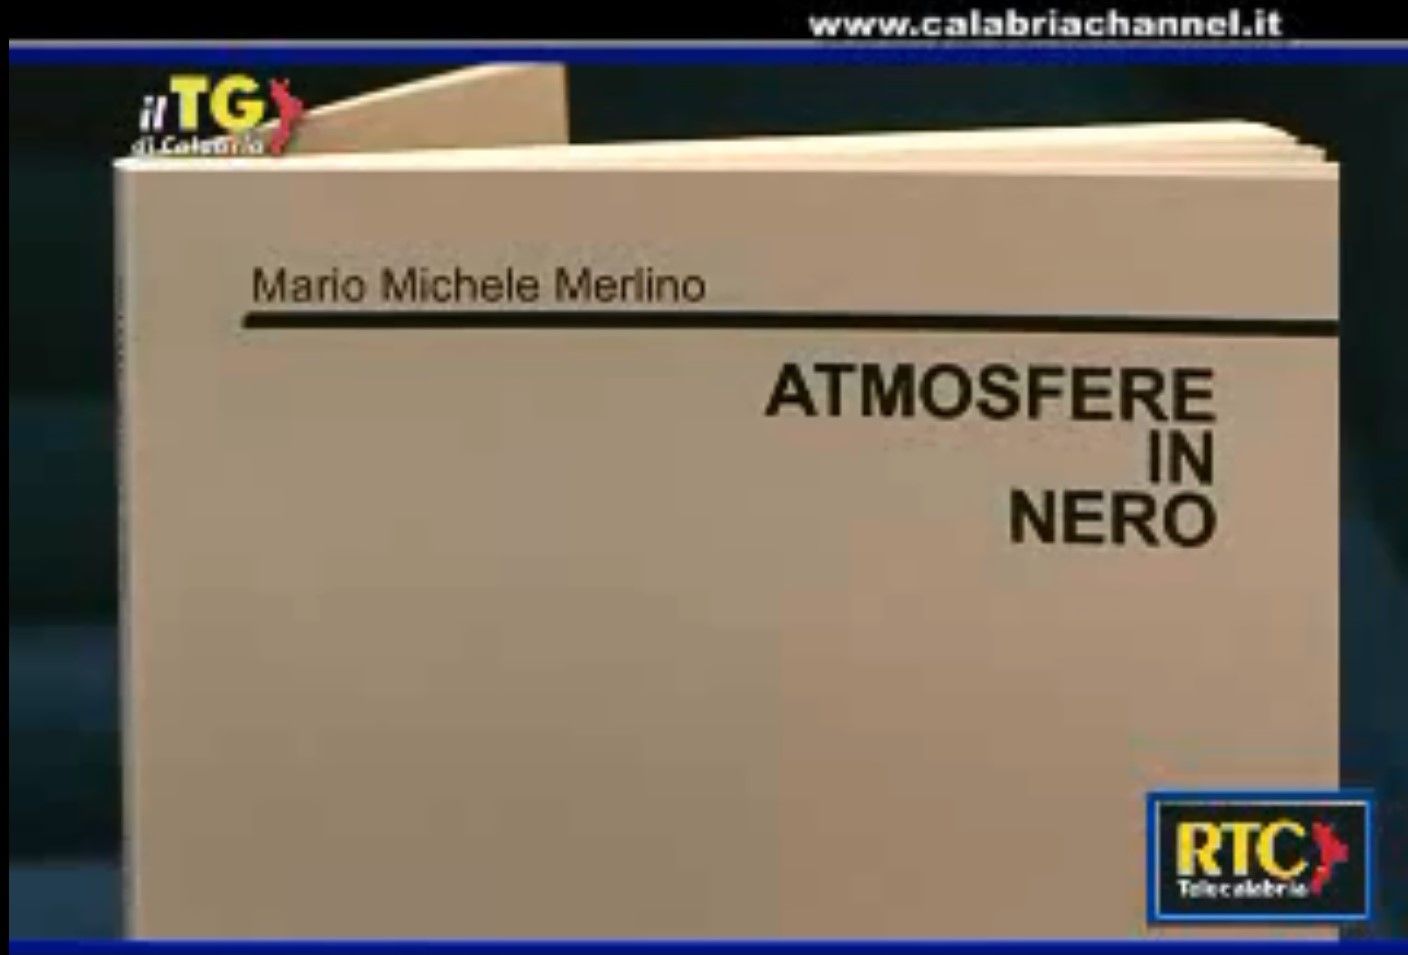 “Atmosfere in Nero” di Mario Michele Merlino al mercatino